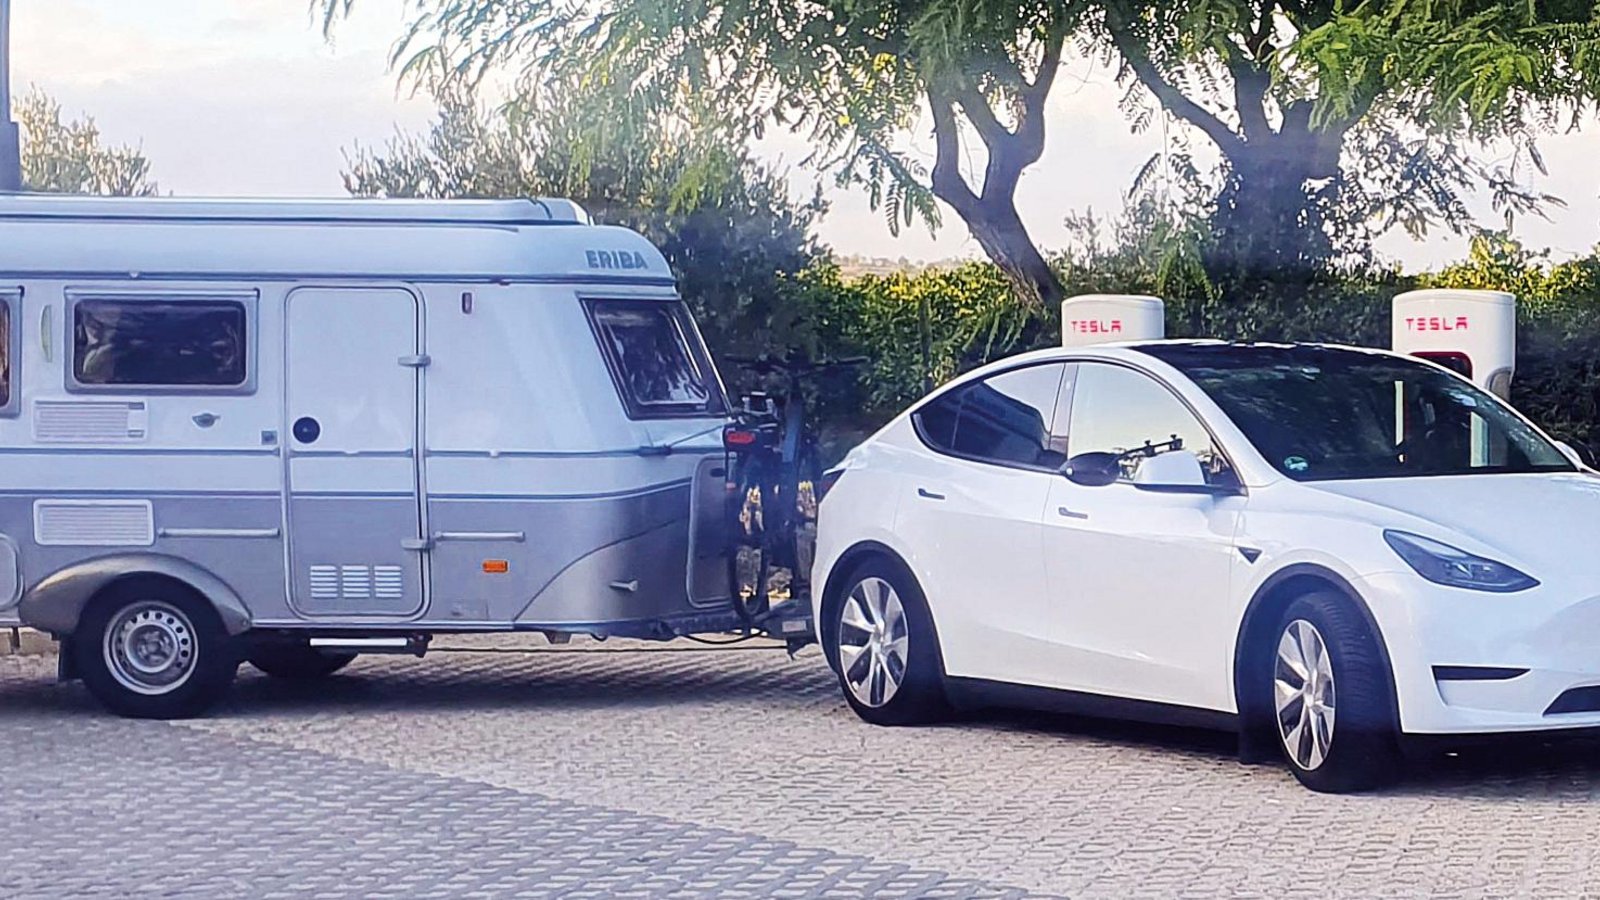 Das Gespann aus Tesla und dem 20 Jahre alten Wohnwagen Eriba Touring 430 hat sich bewährt.  Fotos/Karte: Krüger (3), Rücker (1)